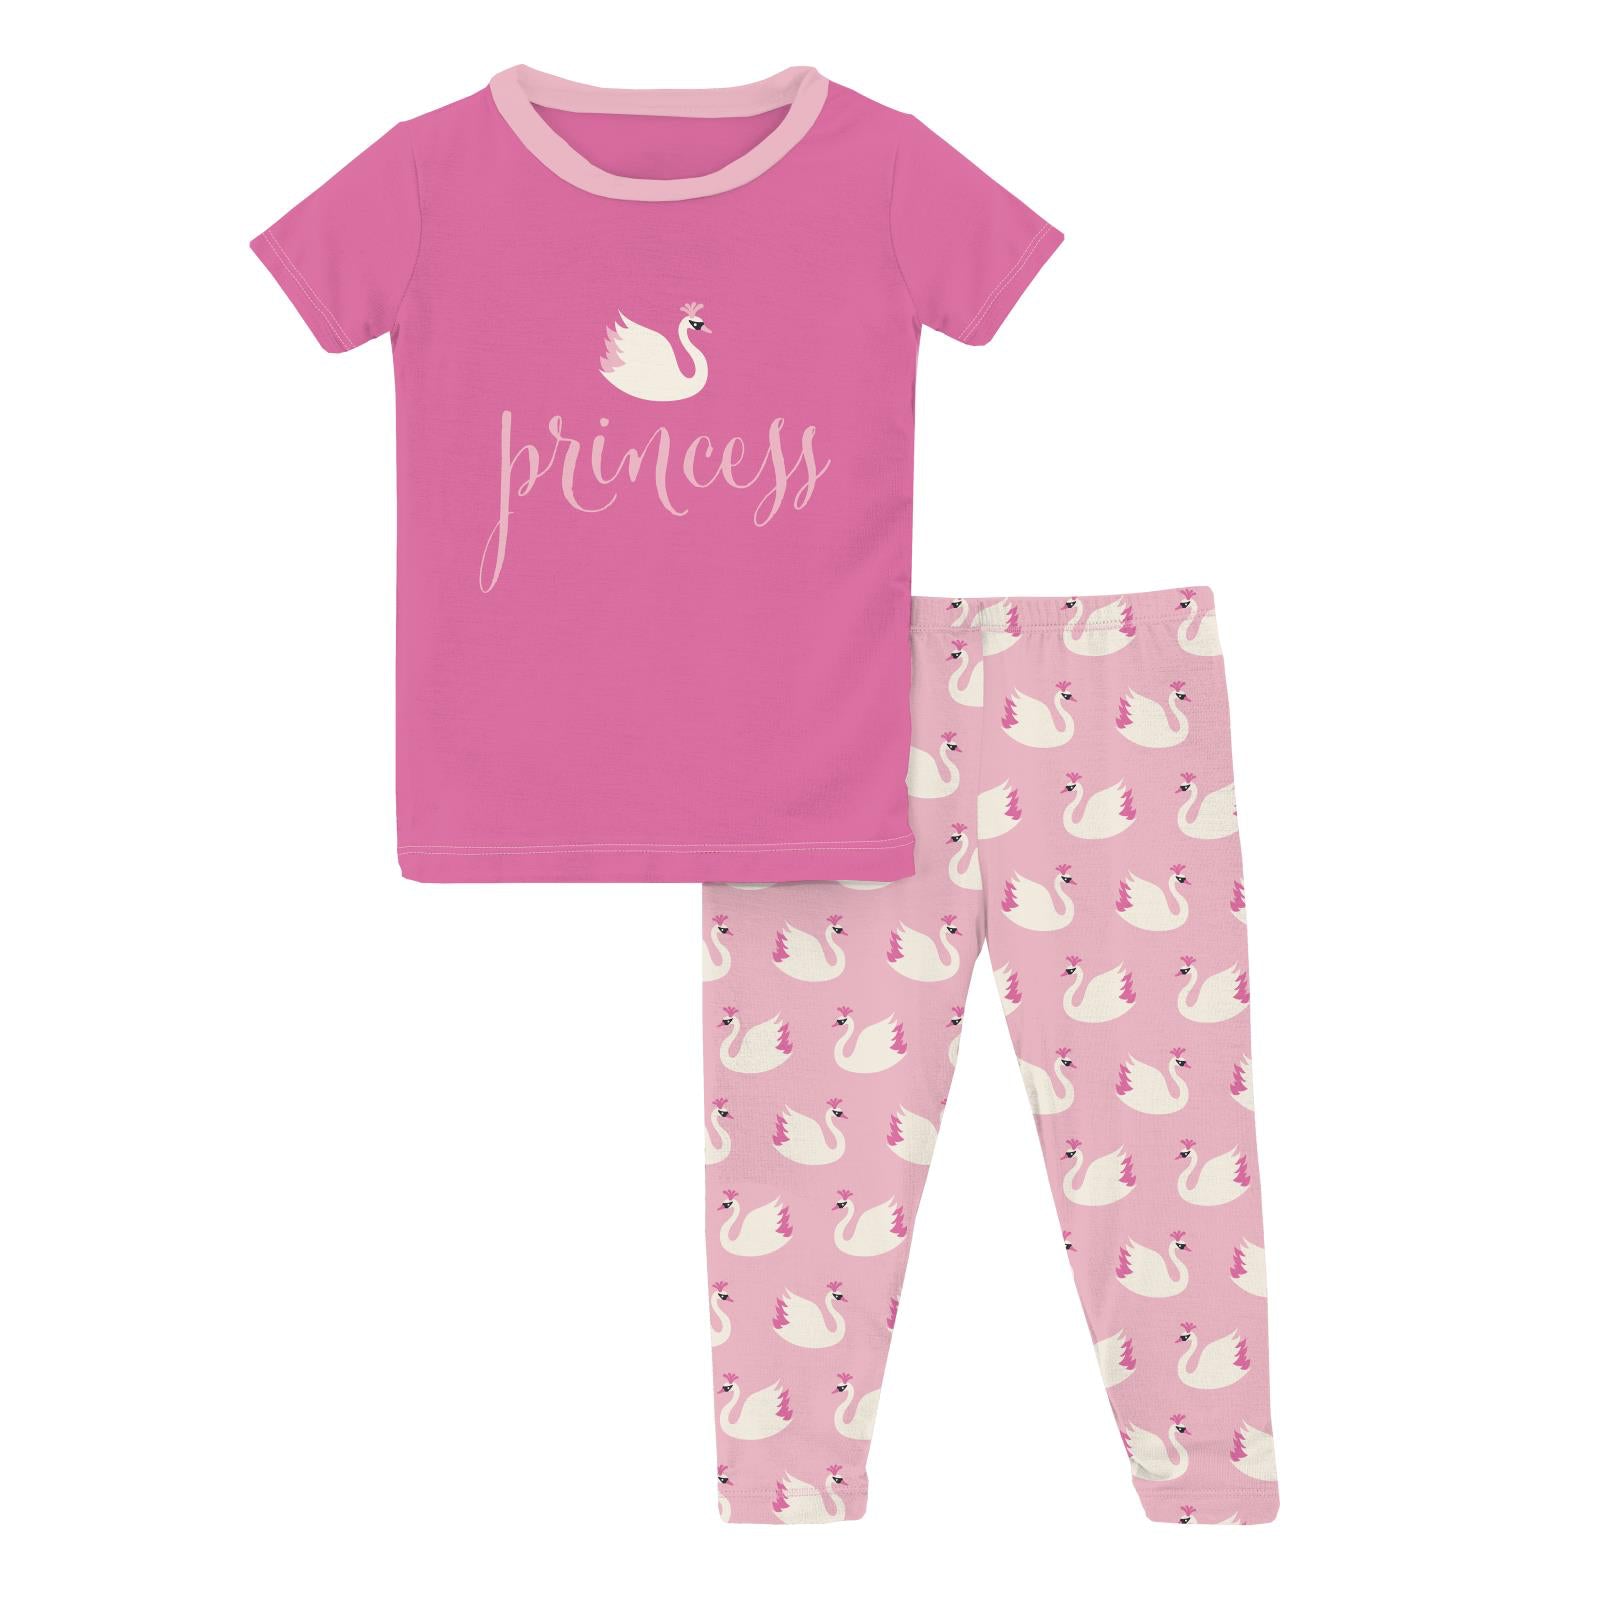 Kickee Cake Pop Swan Princess Short Sleeve Graphic Tee PajamaSet